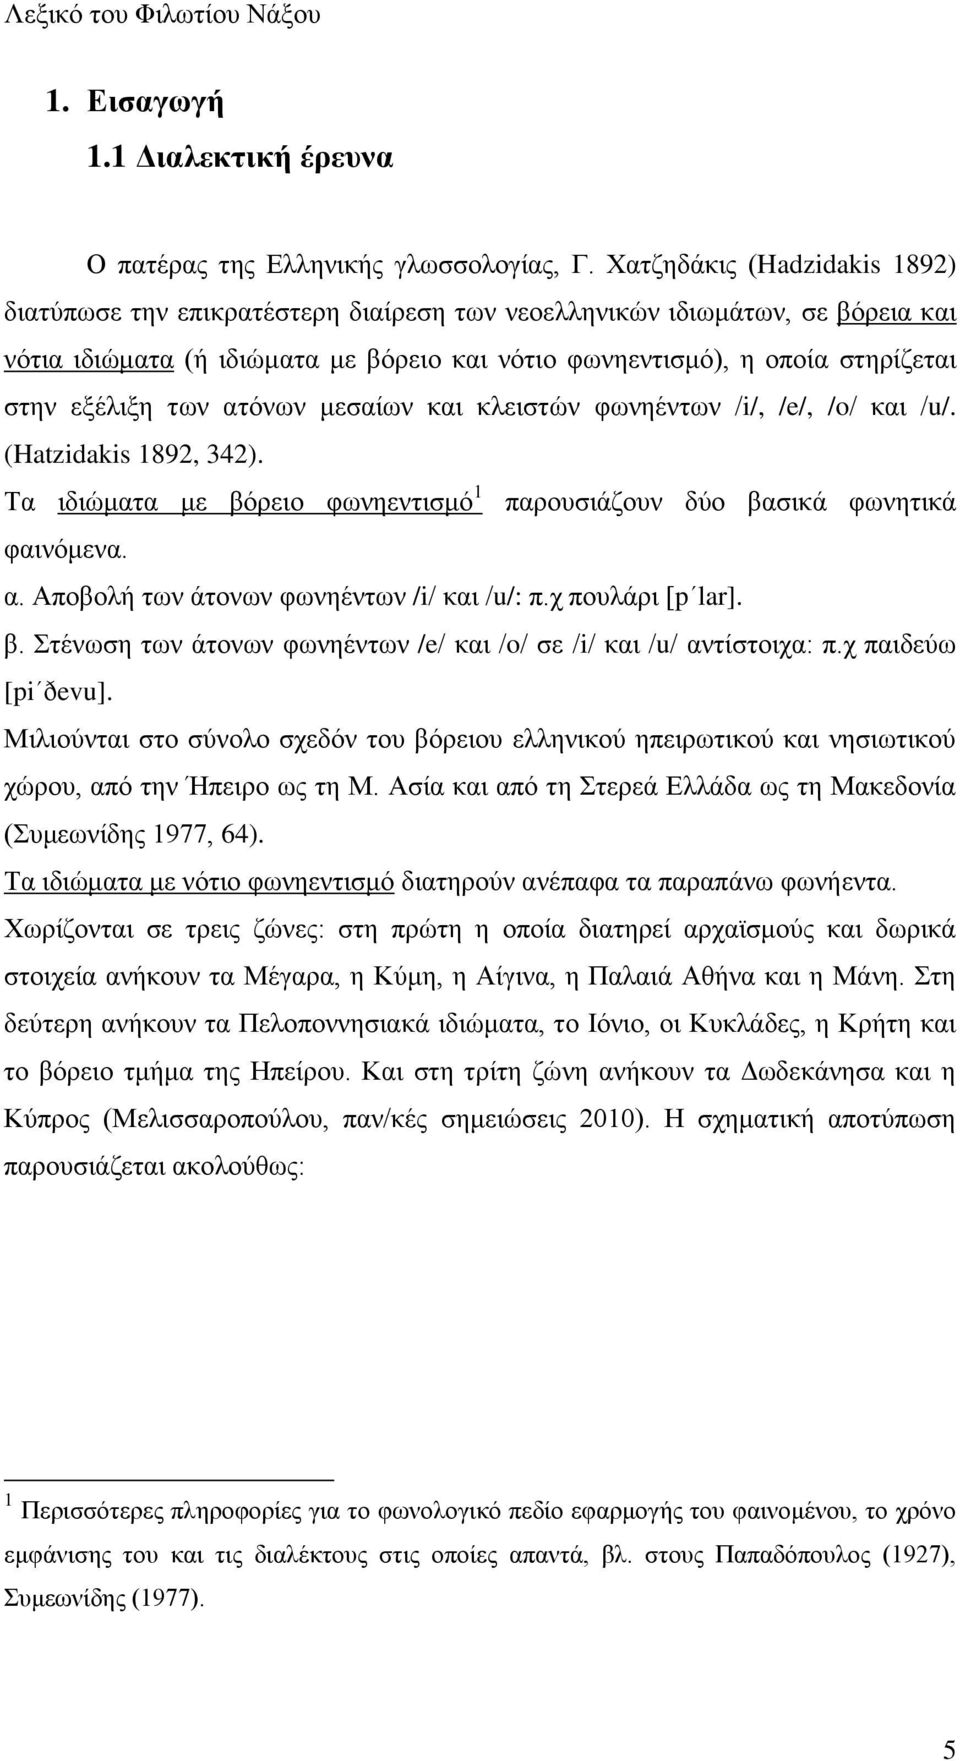 ελέθζλδ ηςκ αηυκςκ ιεζαίςκ ηαζ ηθεζζηχκ θςκδέκηςκ /i/, /e/, /o/ ηαζ /u/. (Hatzidakis 1892, 342). Σα ζδζχιαηα ιε αυνεζμ θςκδεκηζζιυ 1 πανμοζζάγμοκ δφμ ααζζηά θςκδηζηά θαζκυιεκα. α. Ώπμαμθή ηςκ άημκςκ θςκδέκηςκ /i/ ηαζ /u/: π.